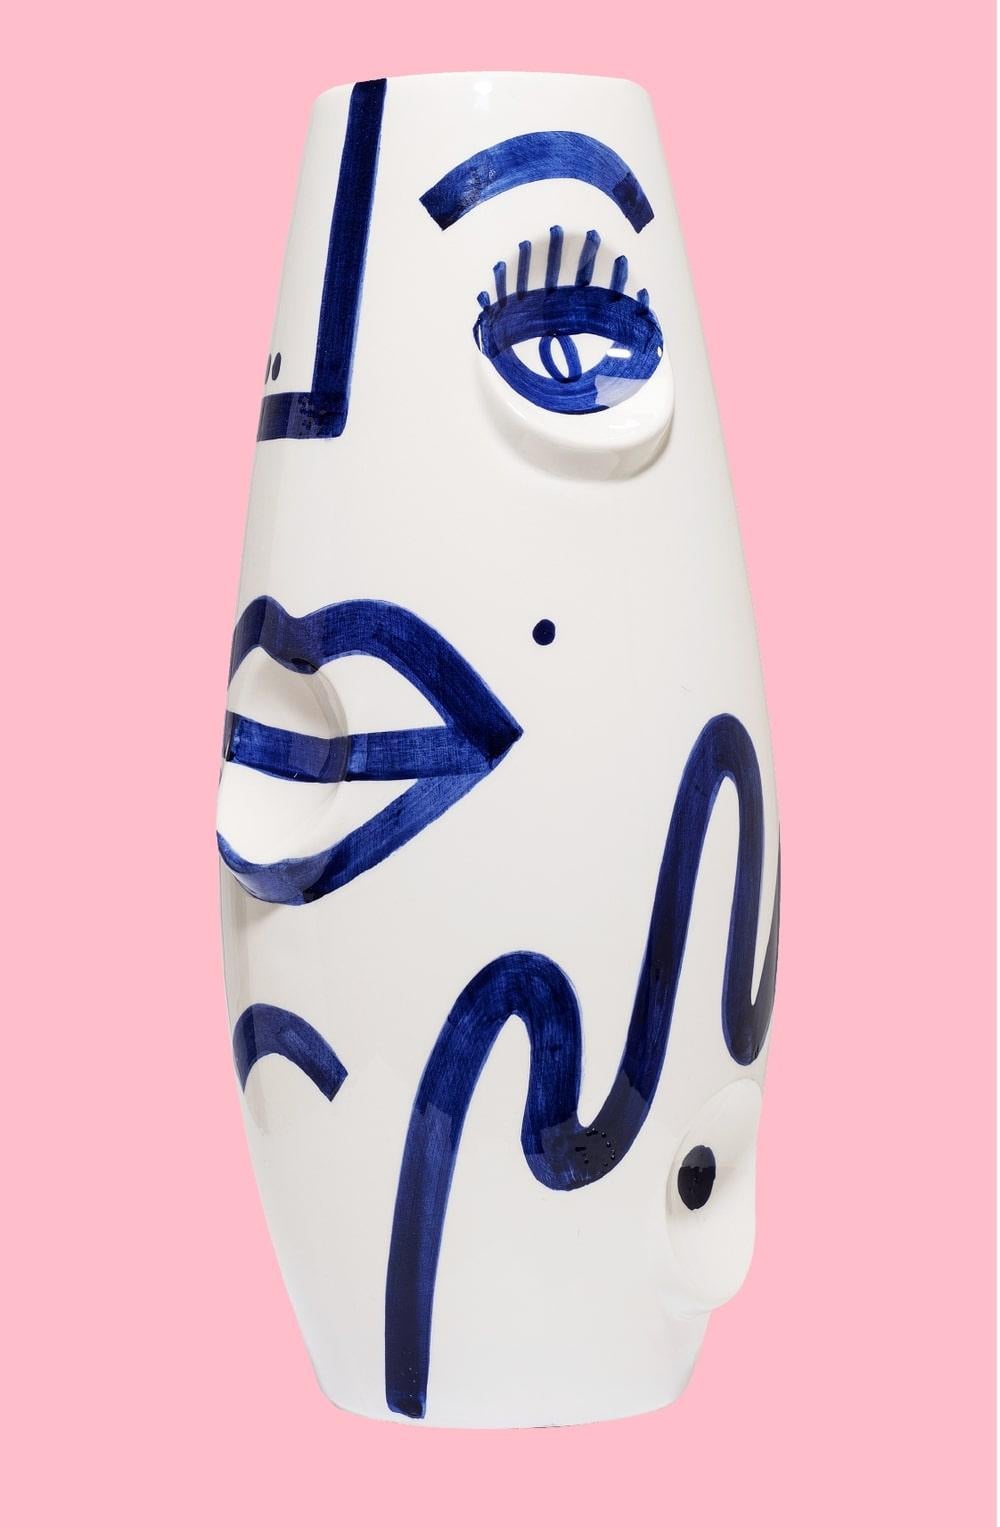 Vase en céramique OKO Face de Malwina Konopacka
Matériaux : Céramique
Dimensions : Ø 19 x 42 cm

Présentée pour la première fois en 2014 dans le cadre de la Tokyo Designers Week, elle a depuis connu de nombreuses rééditions et lancements de